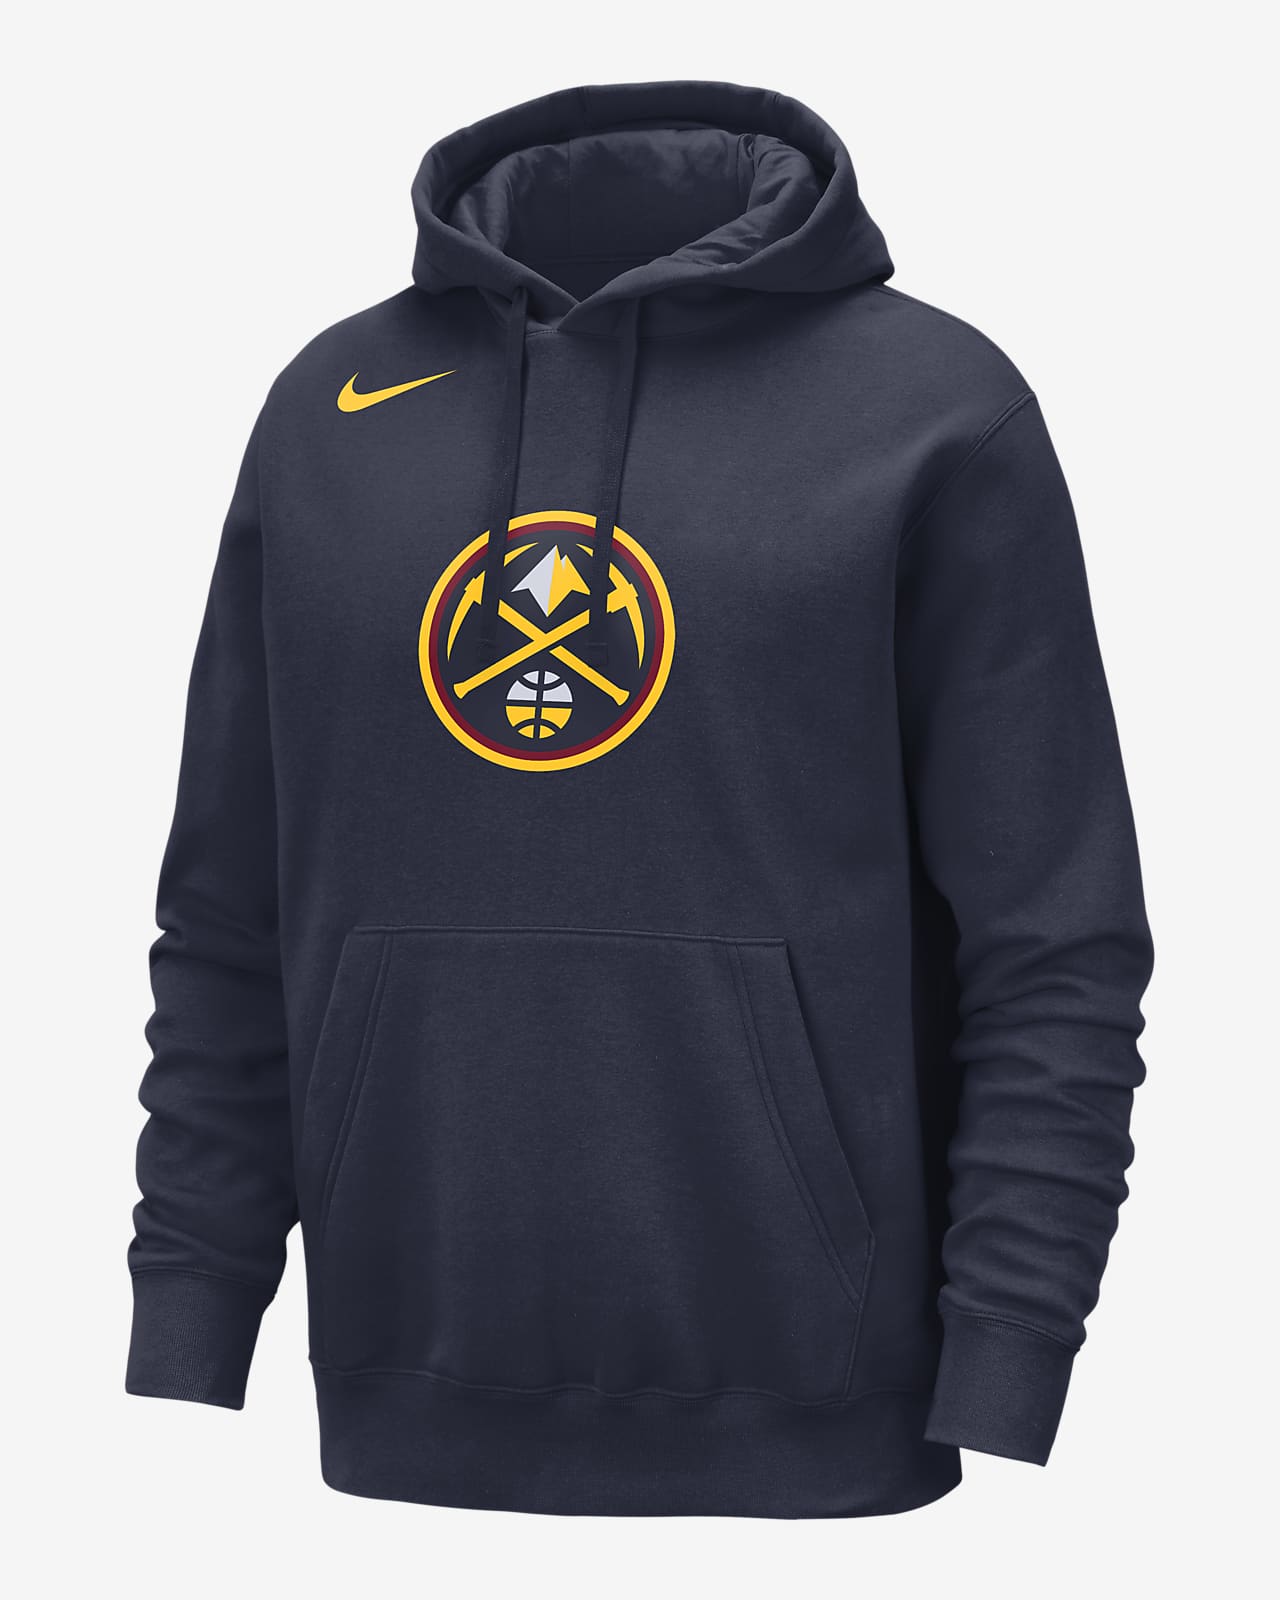 Denver Nuggets Club Sudadera con capucha Nike de la NBA - Hombre